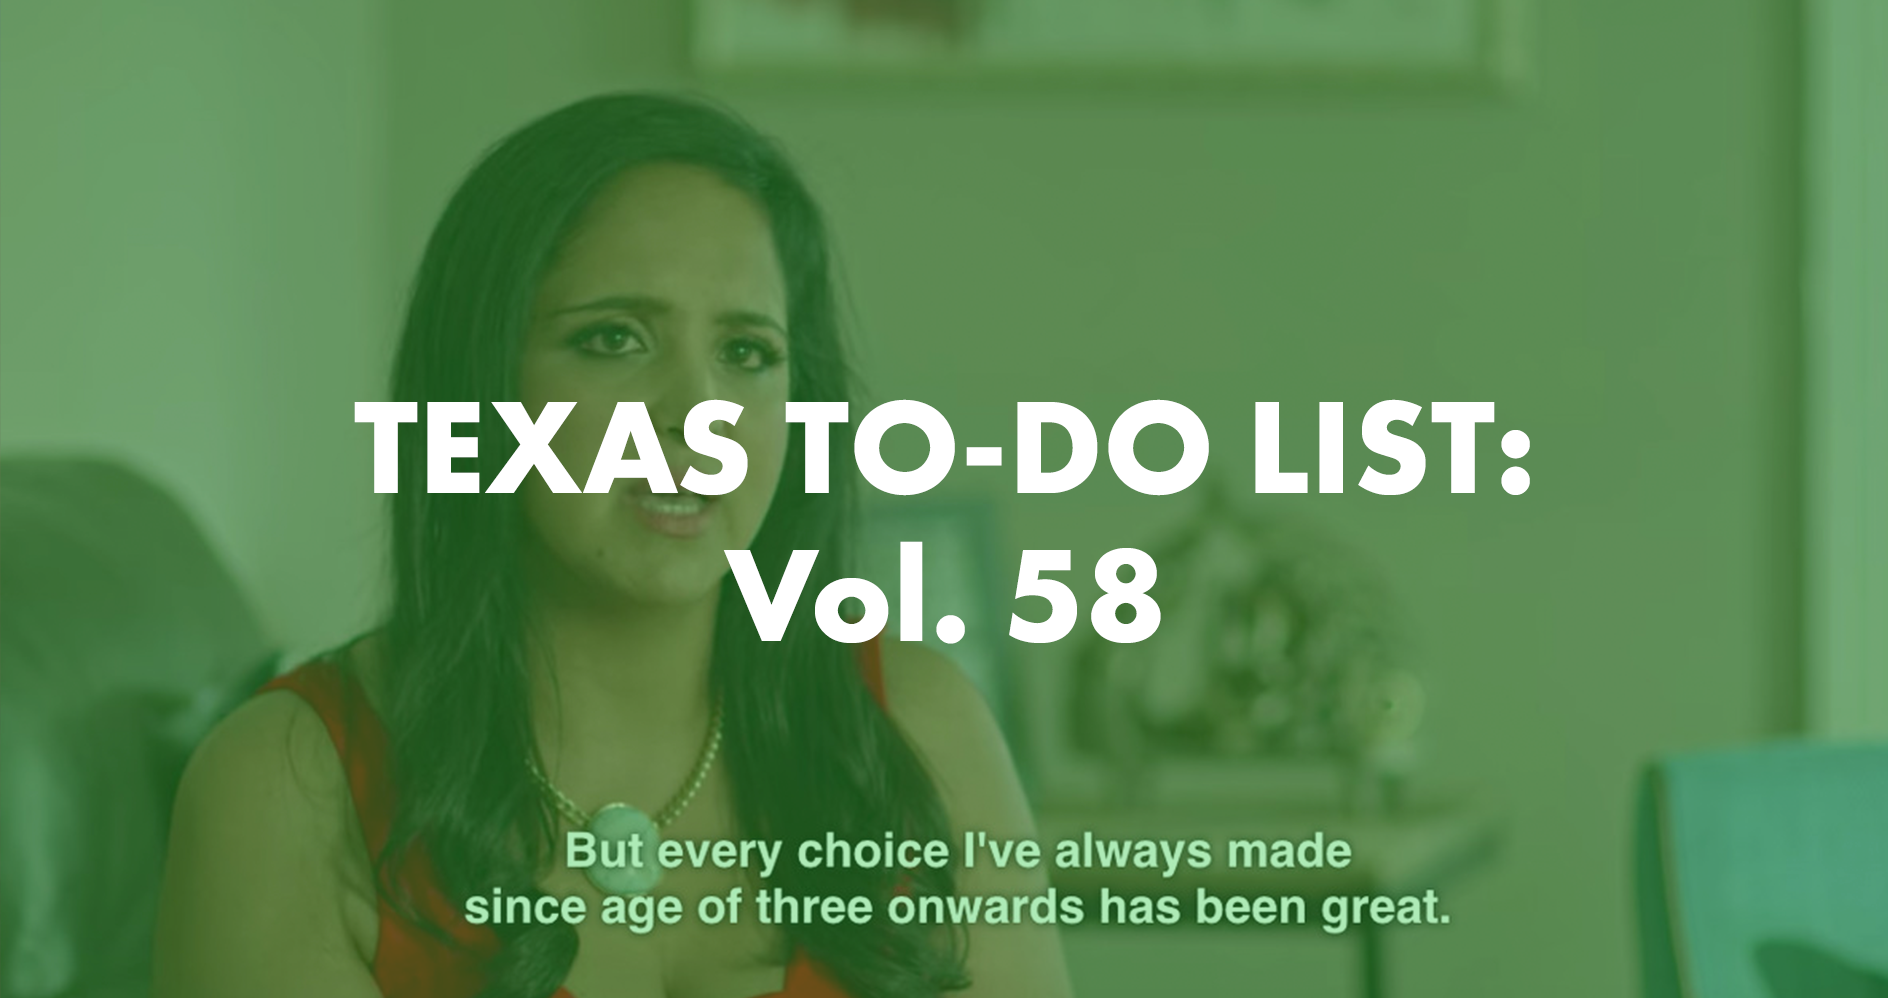 Texas To-Do List Vol. 58